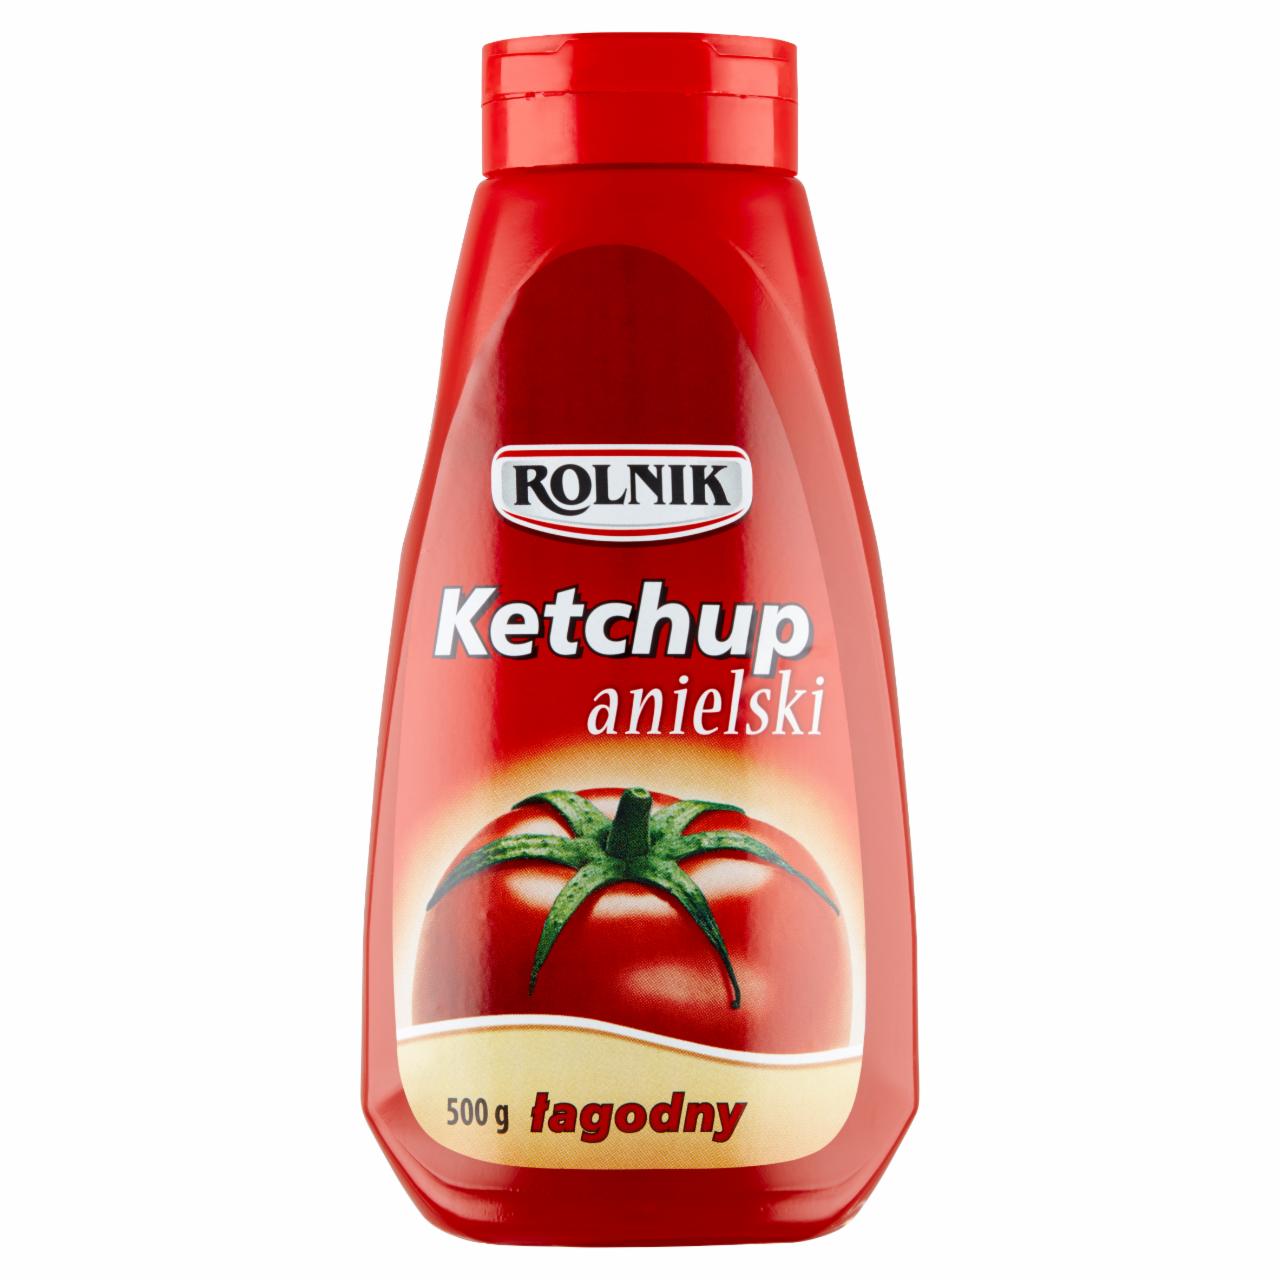 Zdjęcia - Rolnik Ketchup anielski łagodny 500 g